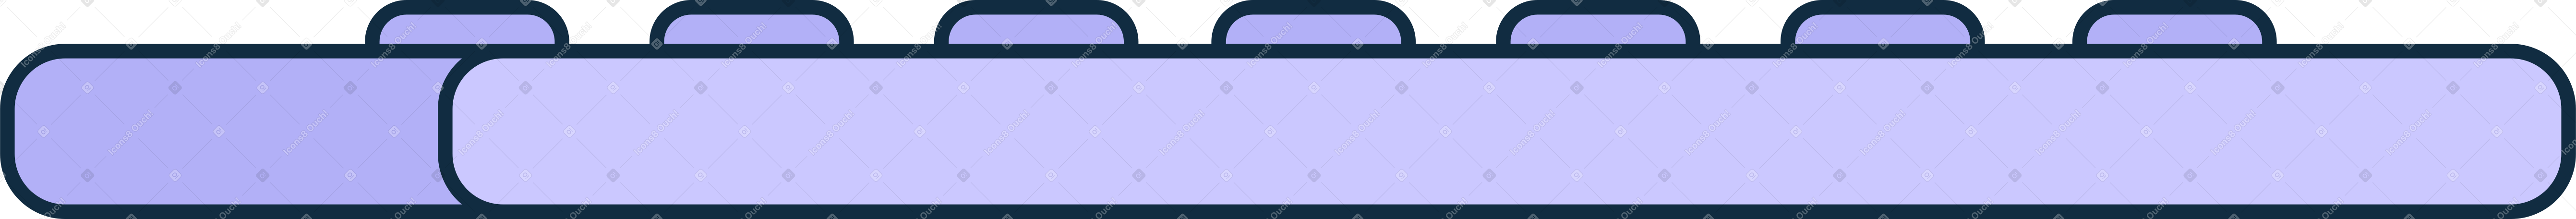 purple keyboard Illustration in PNG, SVG